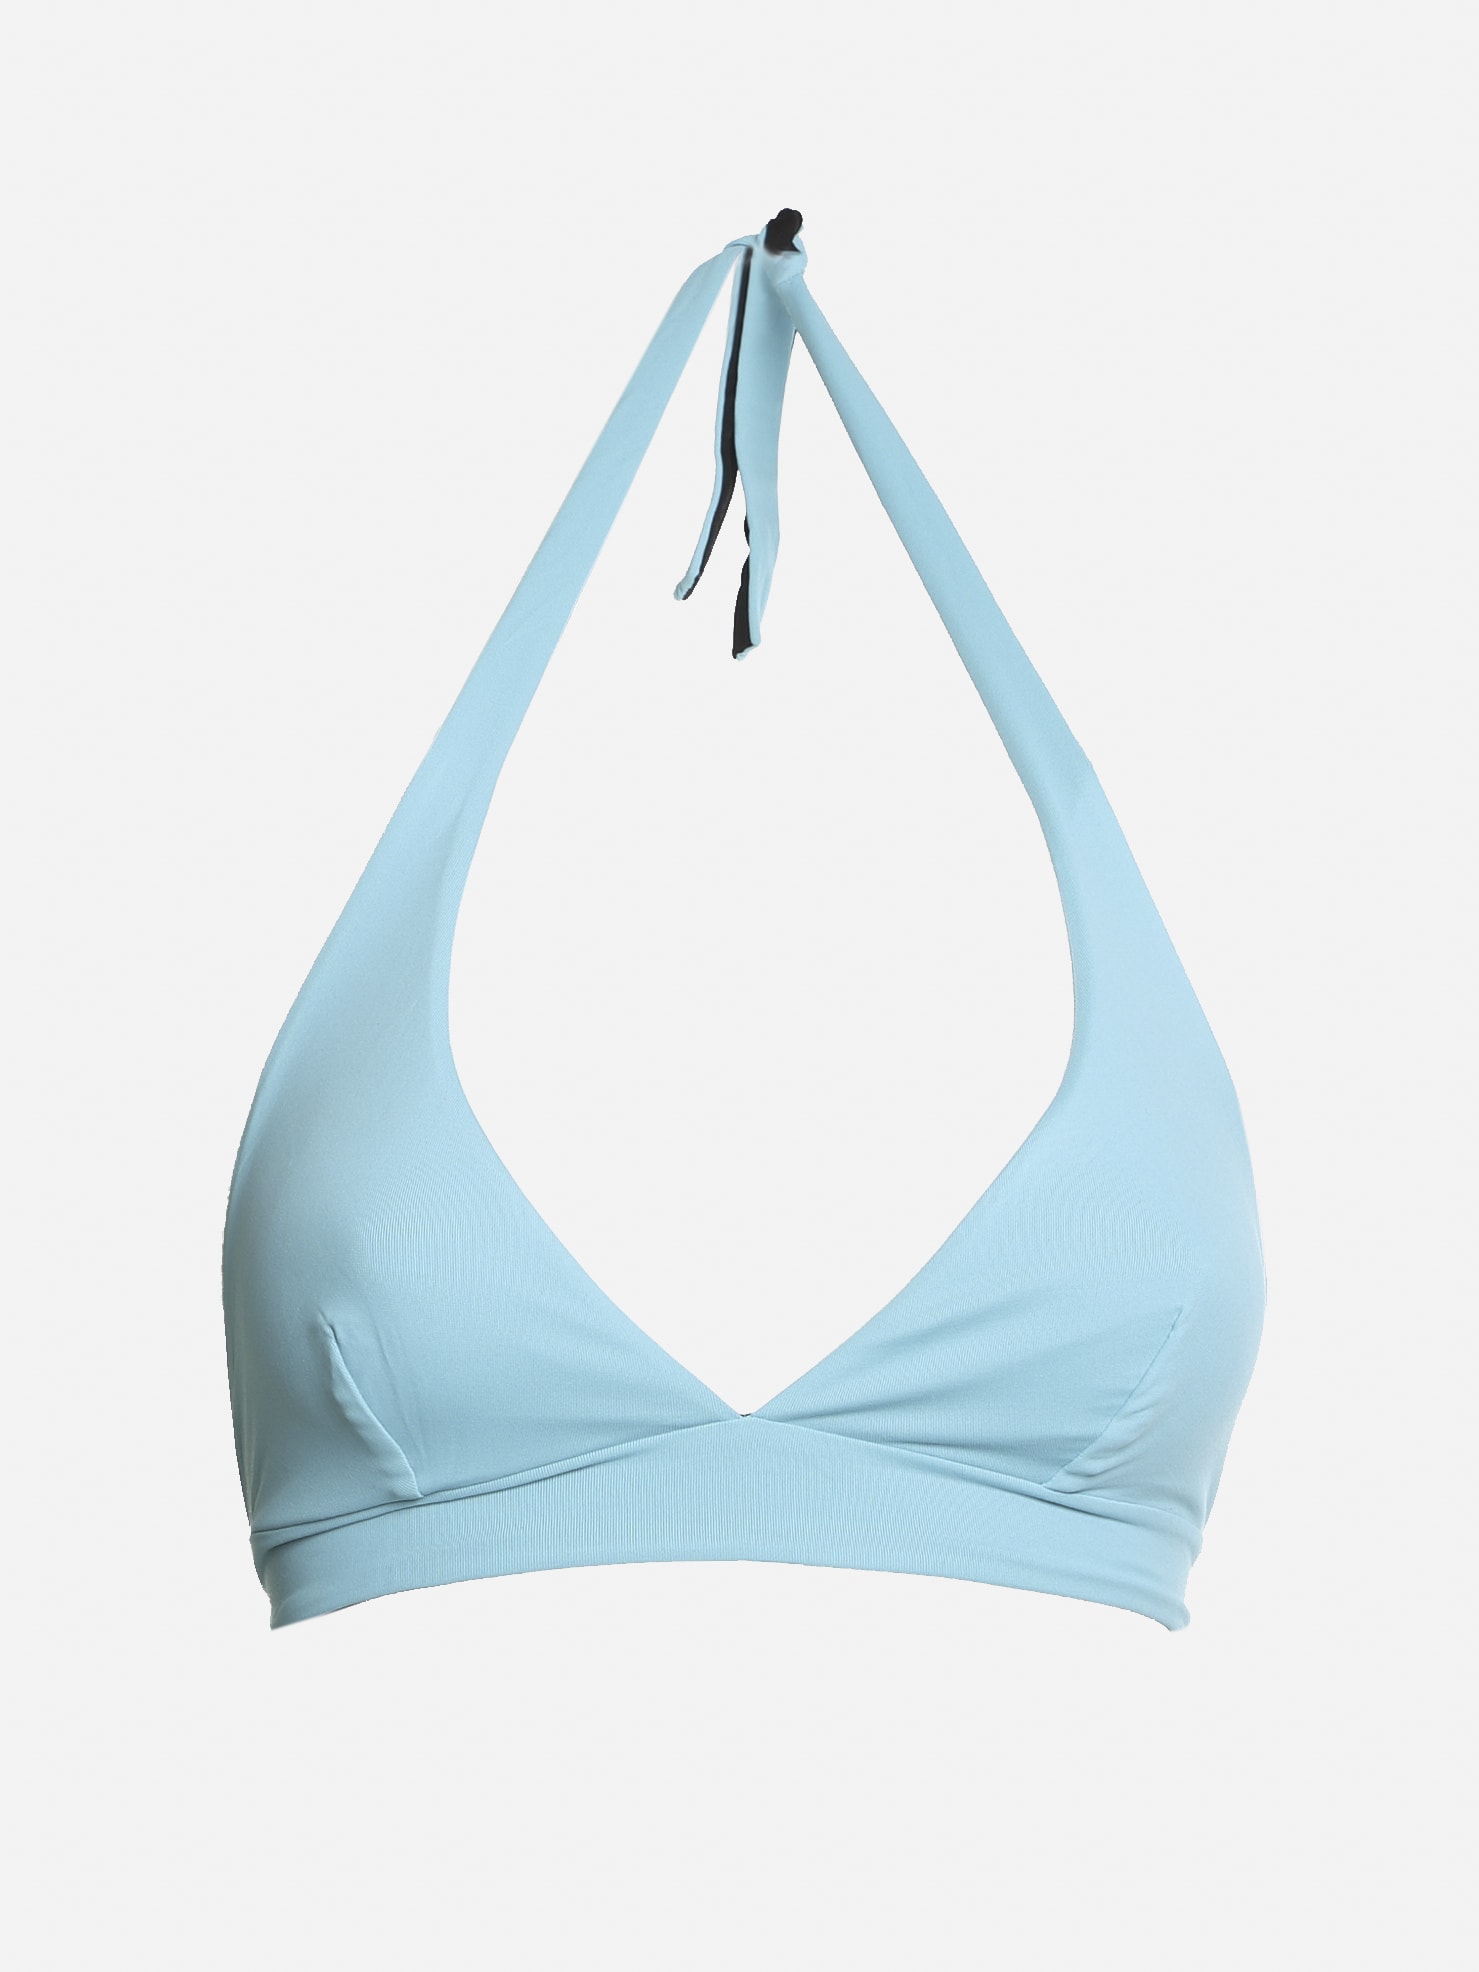 Fisico - Cristina Ferrari Reversible Two-tone Triangle Bikini